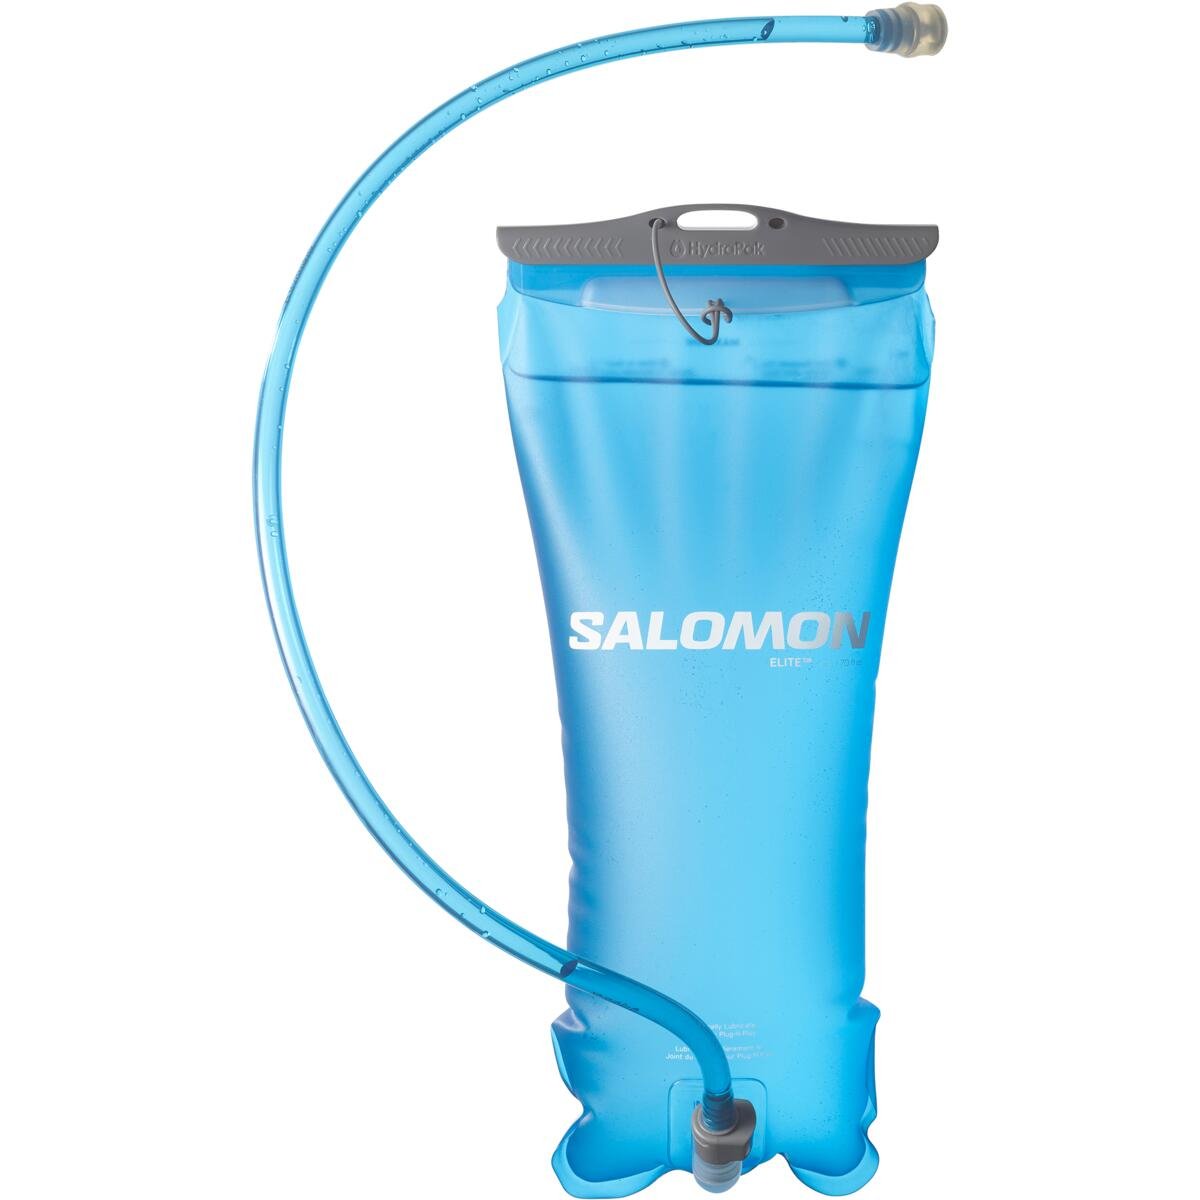 Salomon SOFT Reservoir 2 liter thumbnail